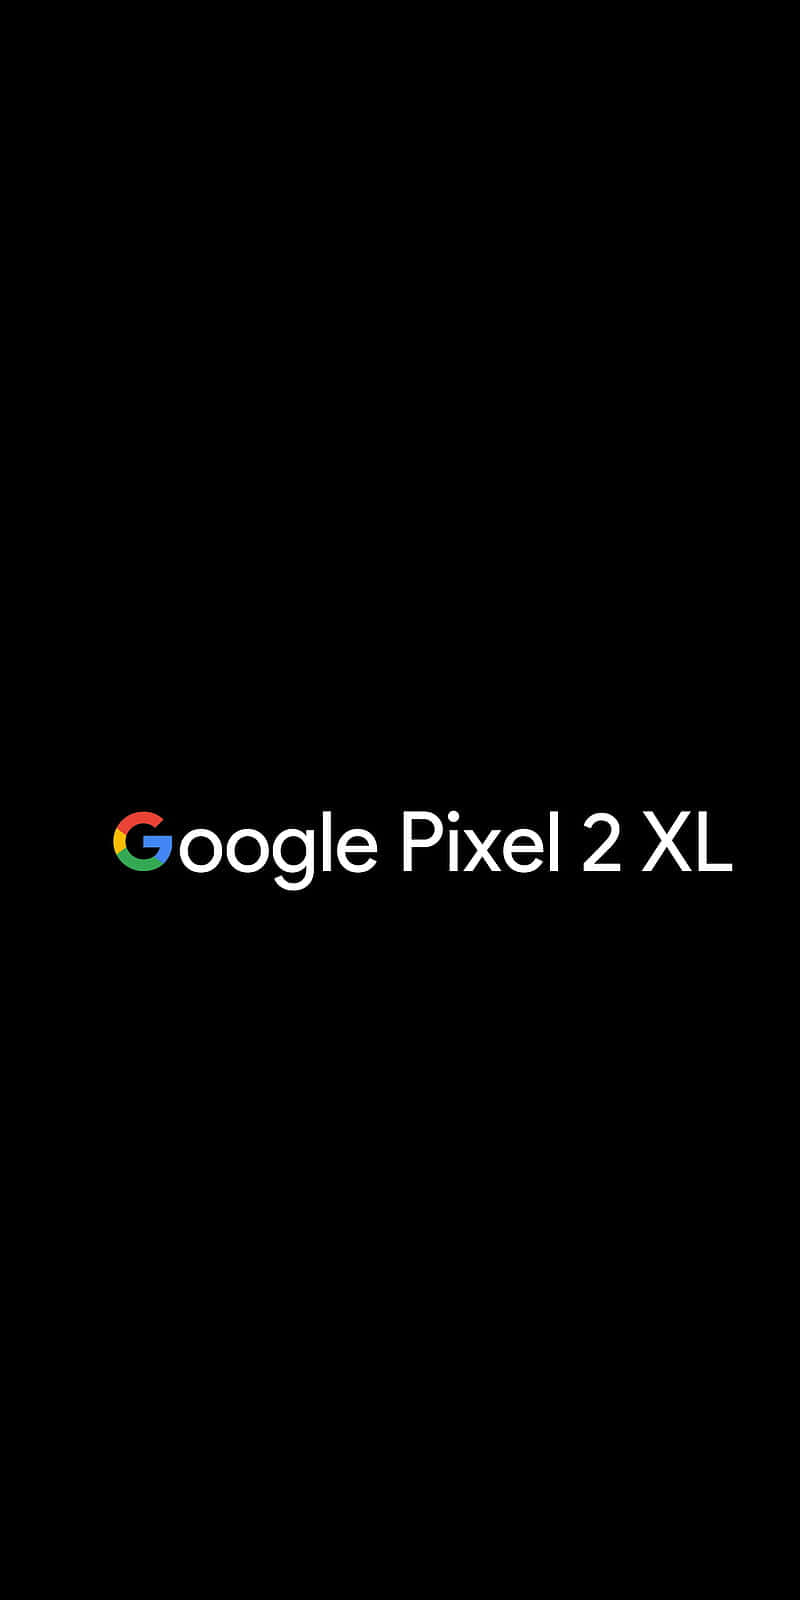 Naturligbakgrundsbild Eller Minimalistisk Design? Google Pixel Xl Är Det Perfekta Valet För Teknikintresserade Som Vill Ha En Smartphone Med Enastående Skärmkvalitet Och Anpassningsmöjligheter När Det Gäller Bakgrundsbild. Wallpaper